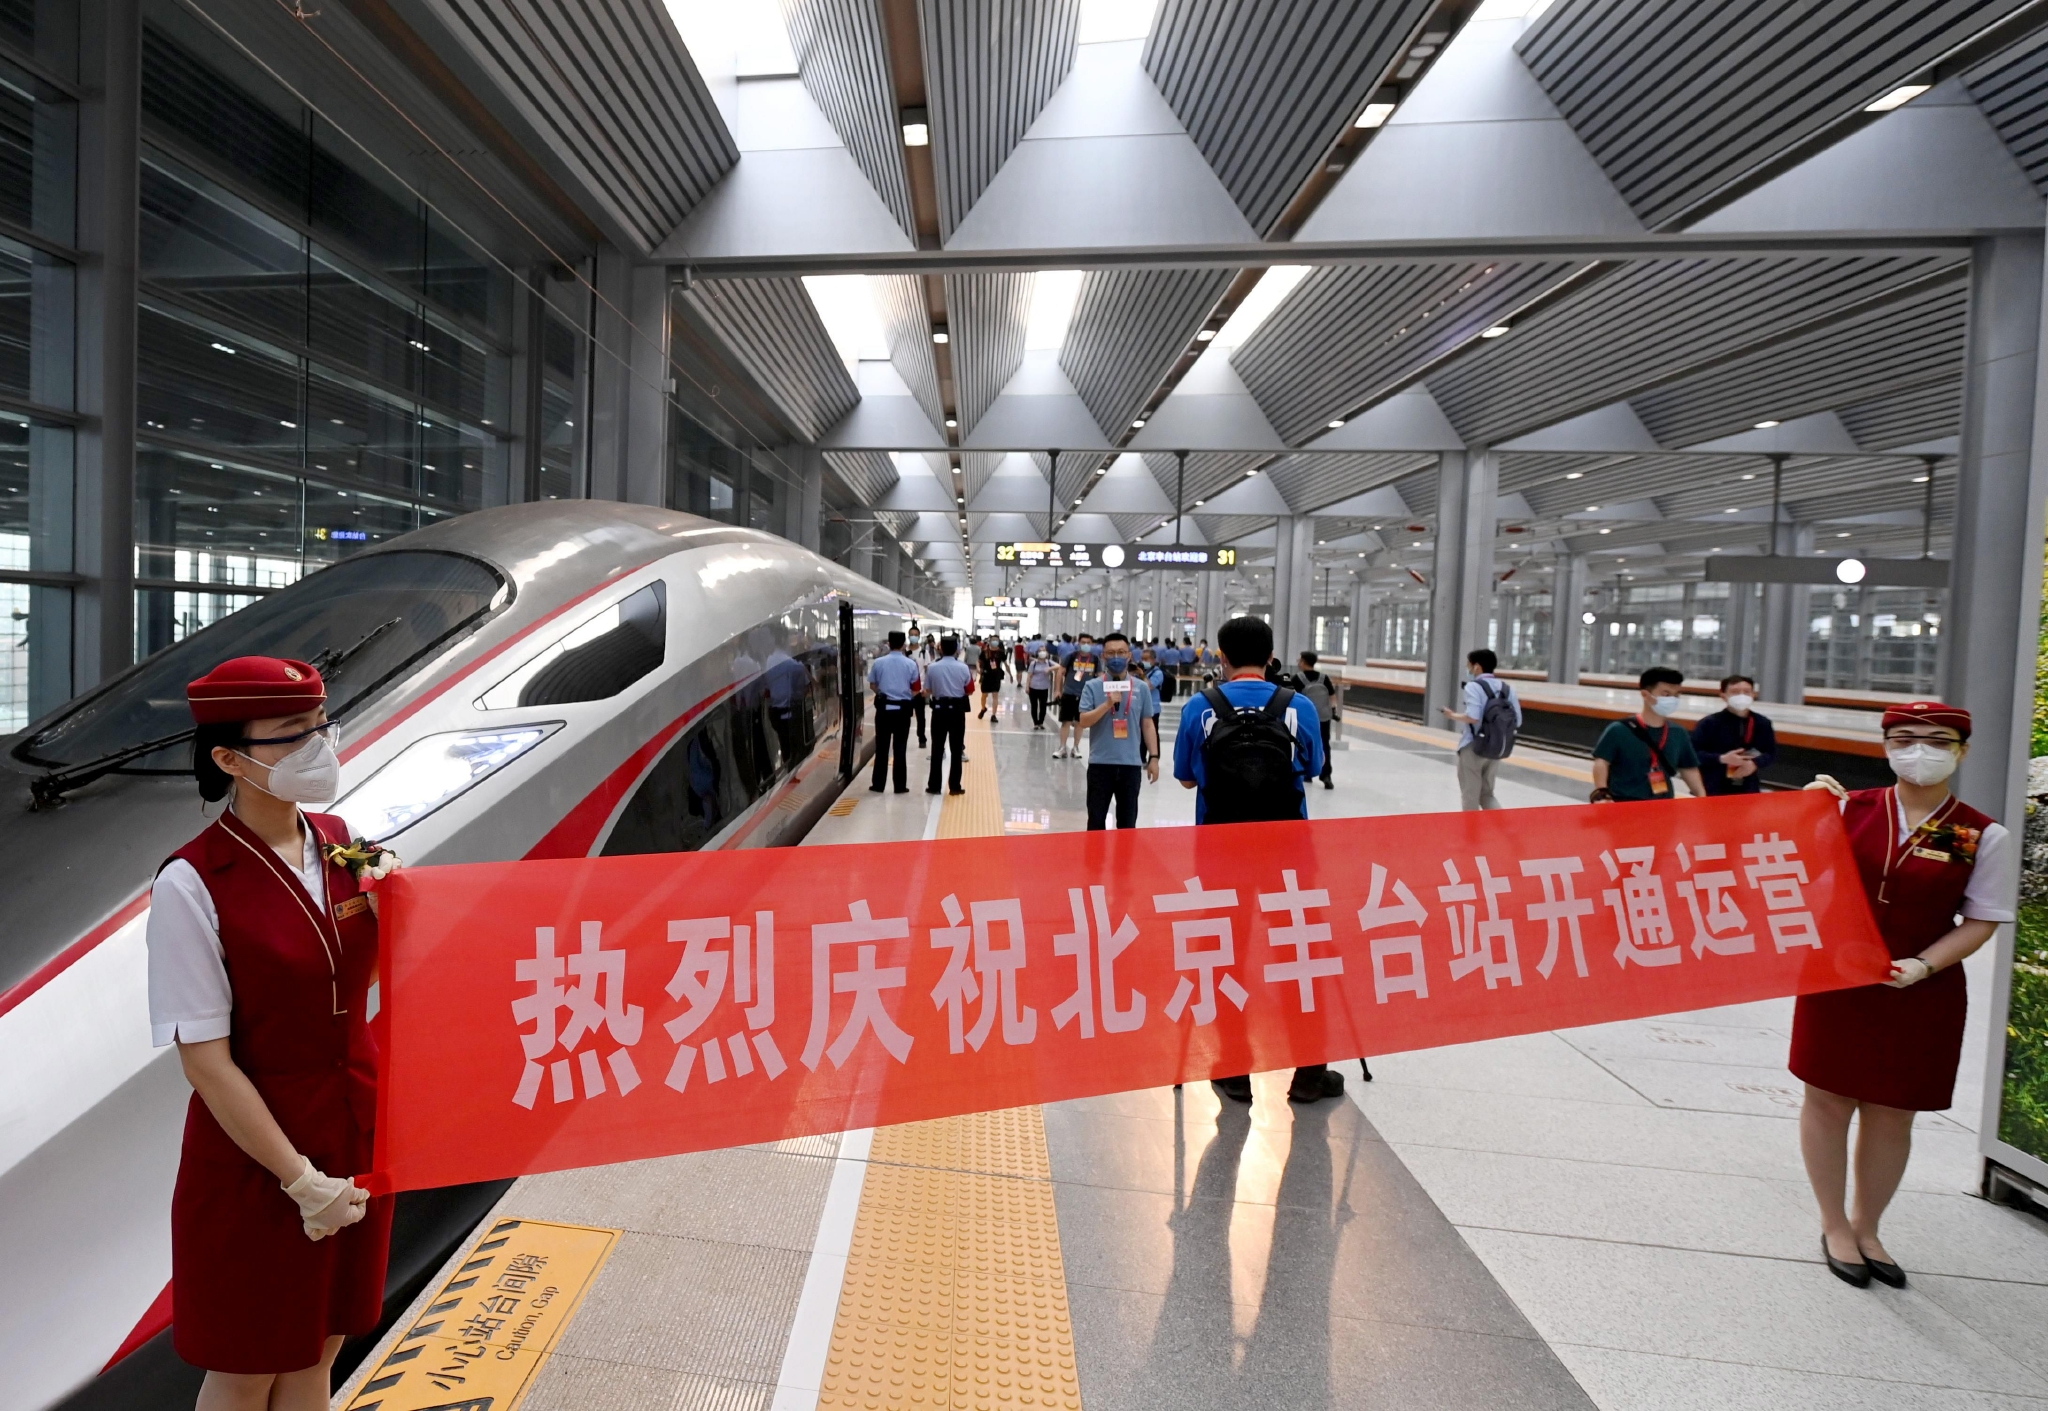 北京丰台站站台上，乘务员拉起横幅庆祝北京丰台站开通运营。董芳忠/摄